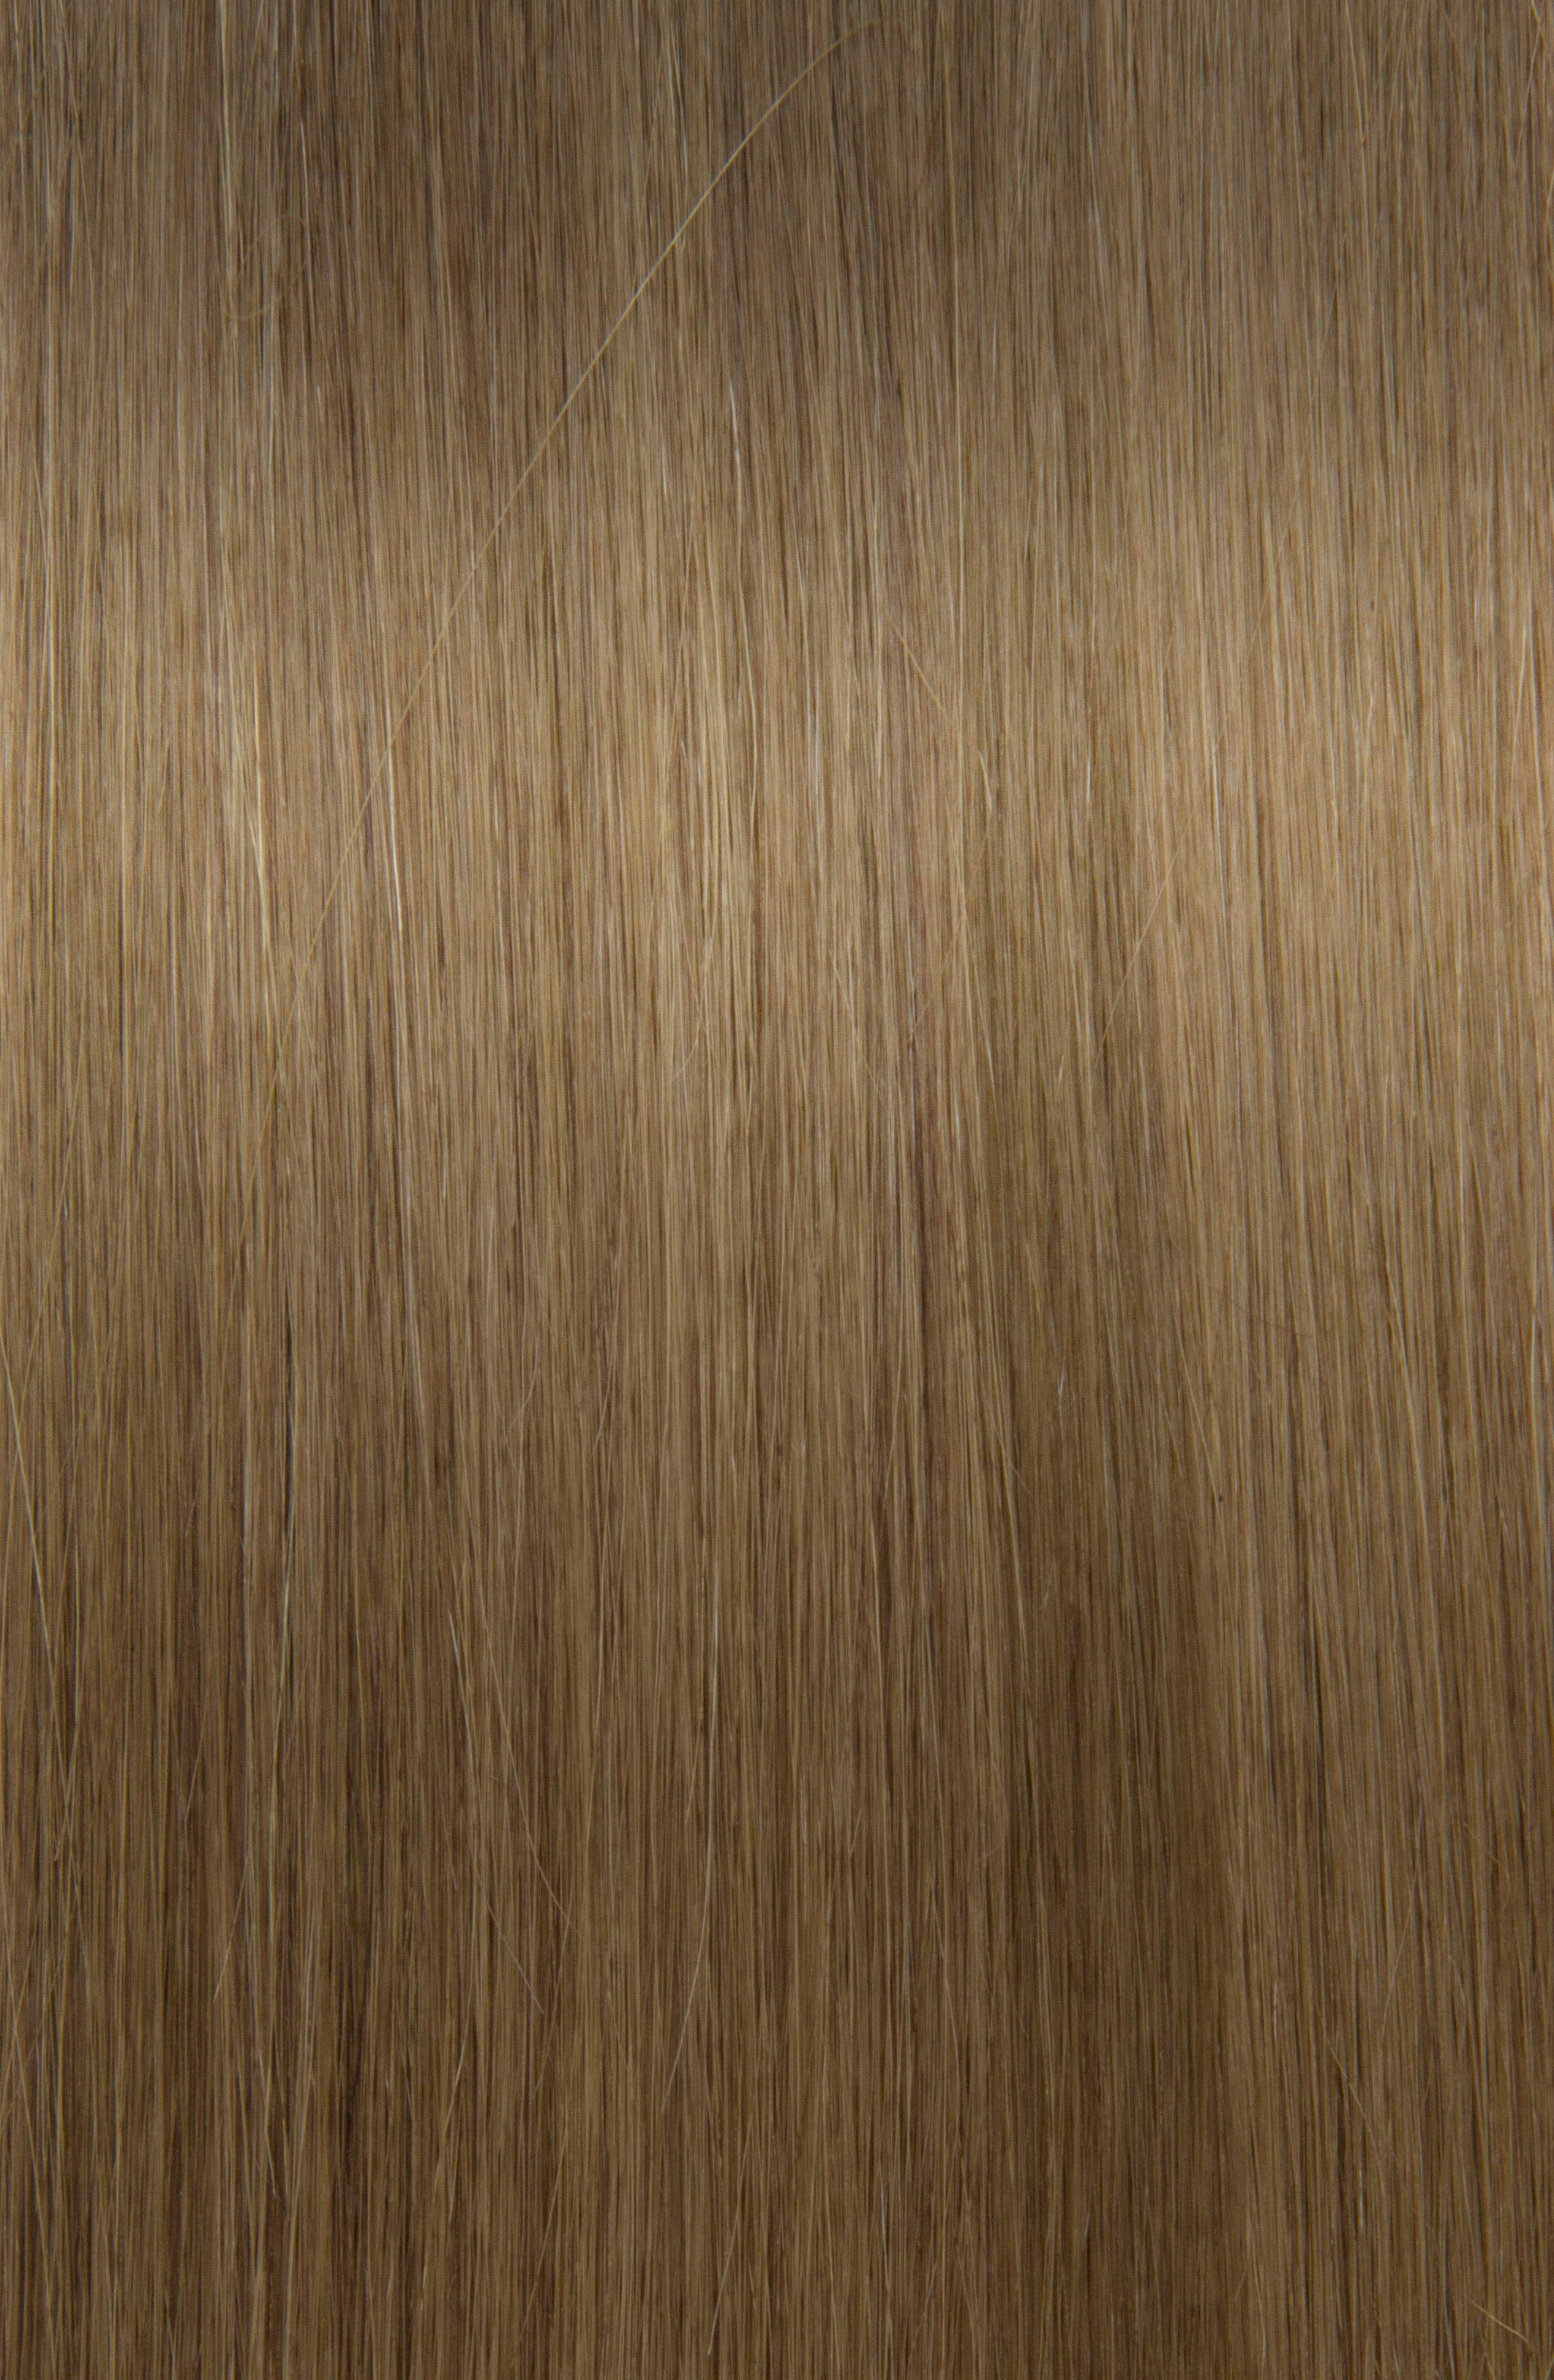 Hairshop Волосы для наращивания 7.1 (10) 50см J-Line (20 капсул) (Пепельно-русый)